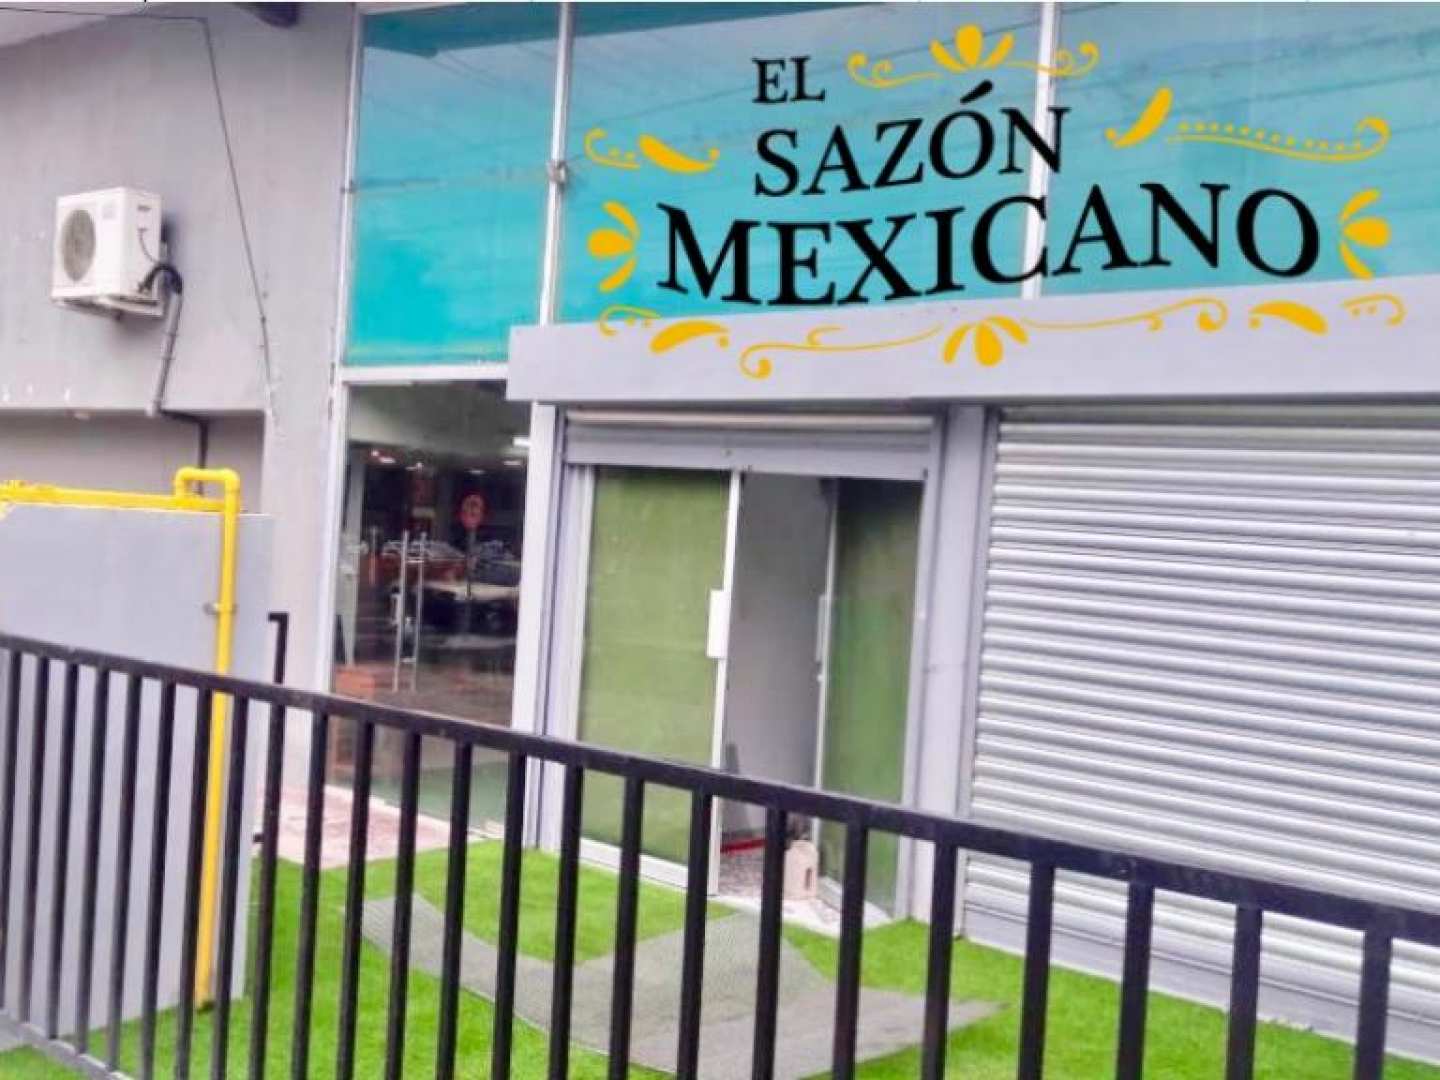 El Sazón Mexicano